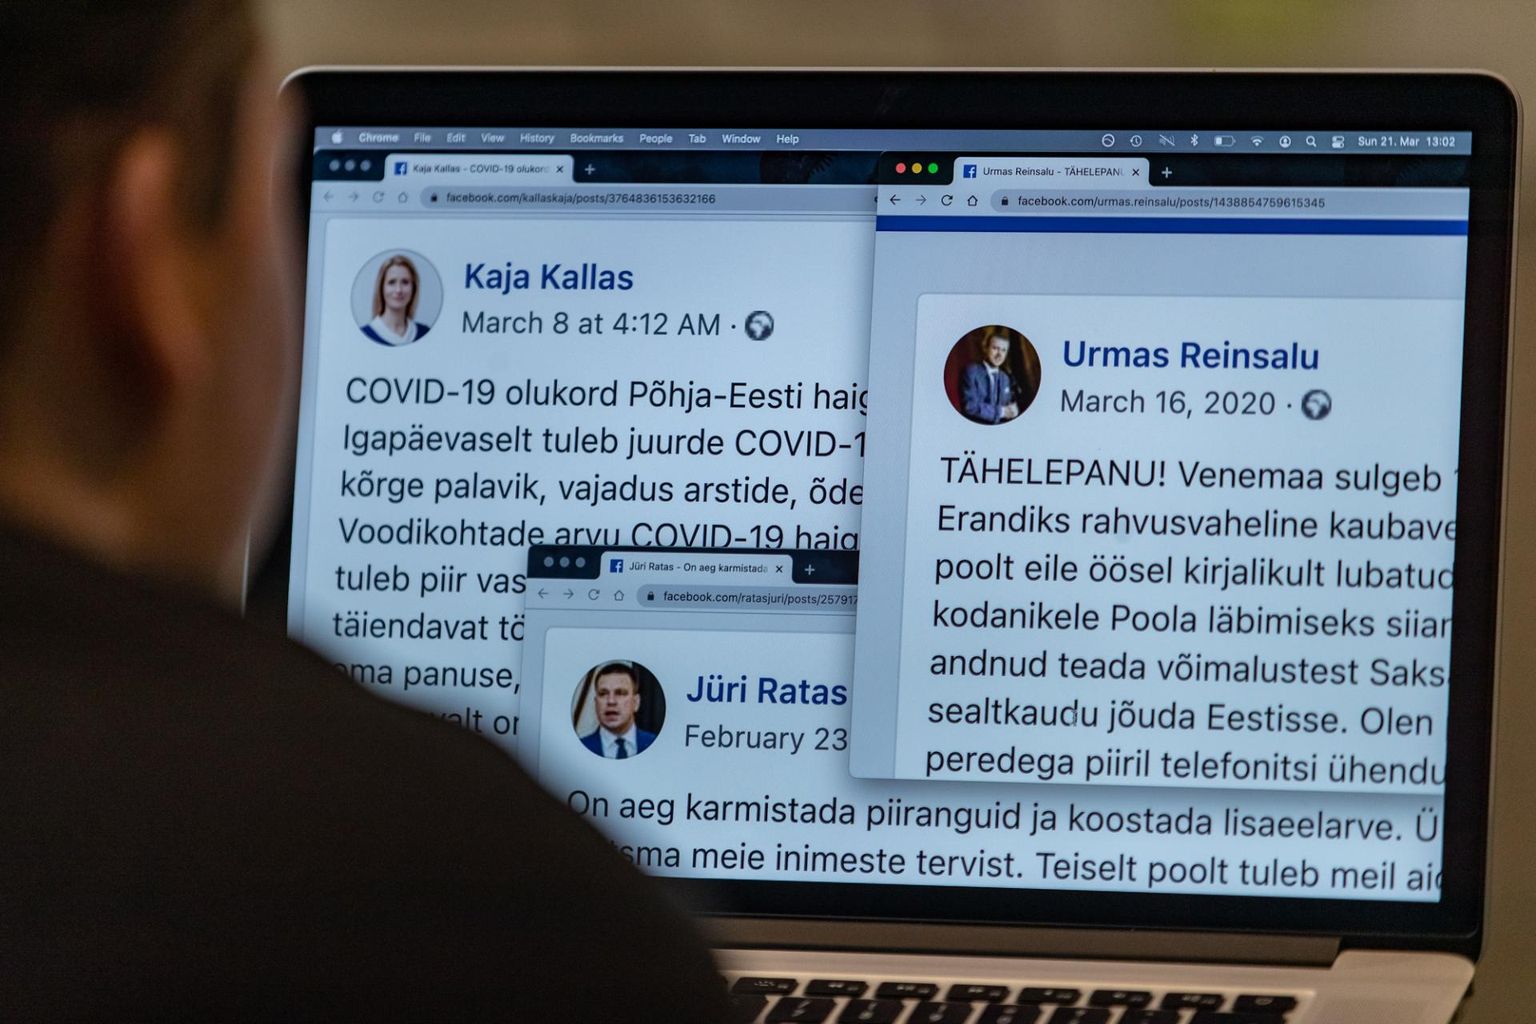 Poliitikute teadaanded Facebookis. Urmas Reinsalu, Jüri Ratase ja Kaja Kallase sõnumid sotsiaalmeedias. Mõnikord jõuavad avalikkuseni veel kinnitamata valitsuse otsused, külvates segadust ja tekitades küsimusi.